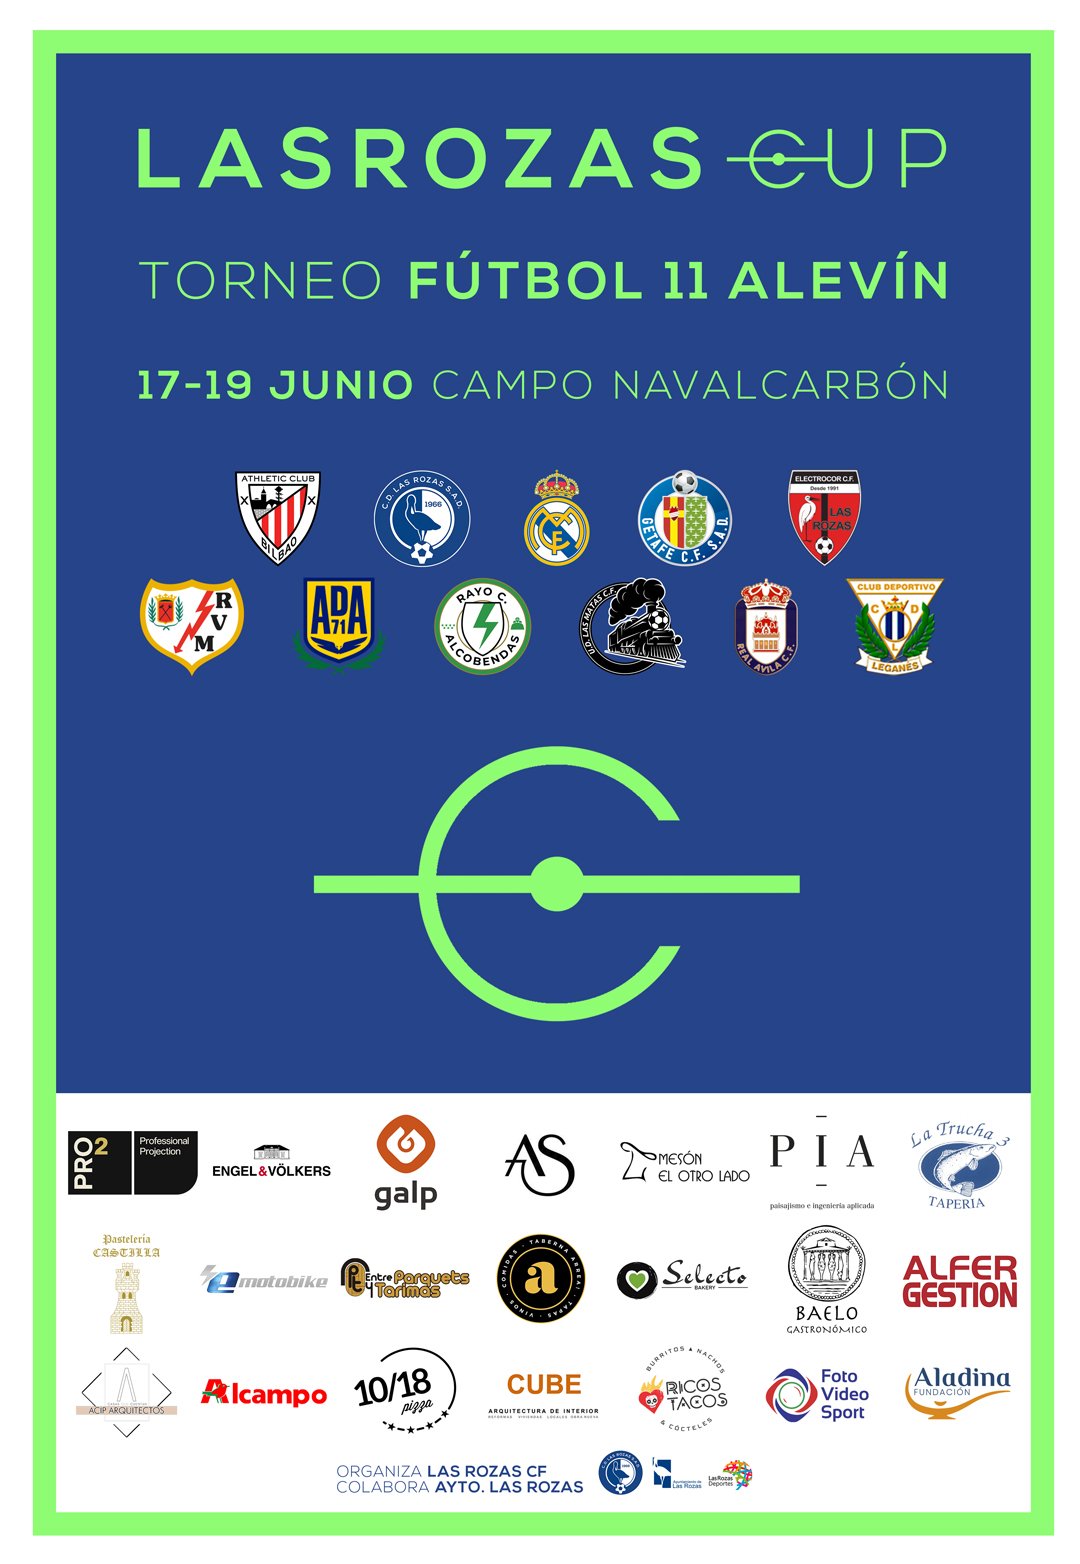 Las Rozas CUP – Torneo Futbol 11 Alevín – 17-19 junio – Campo Navalcarbón